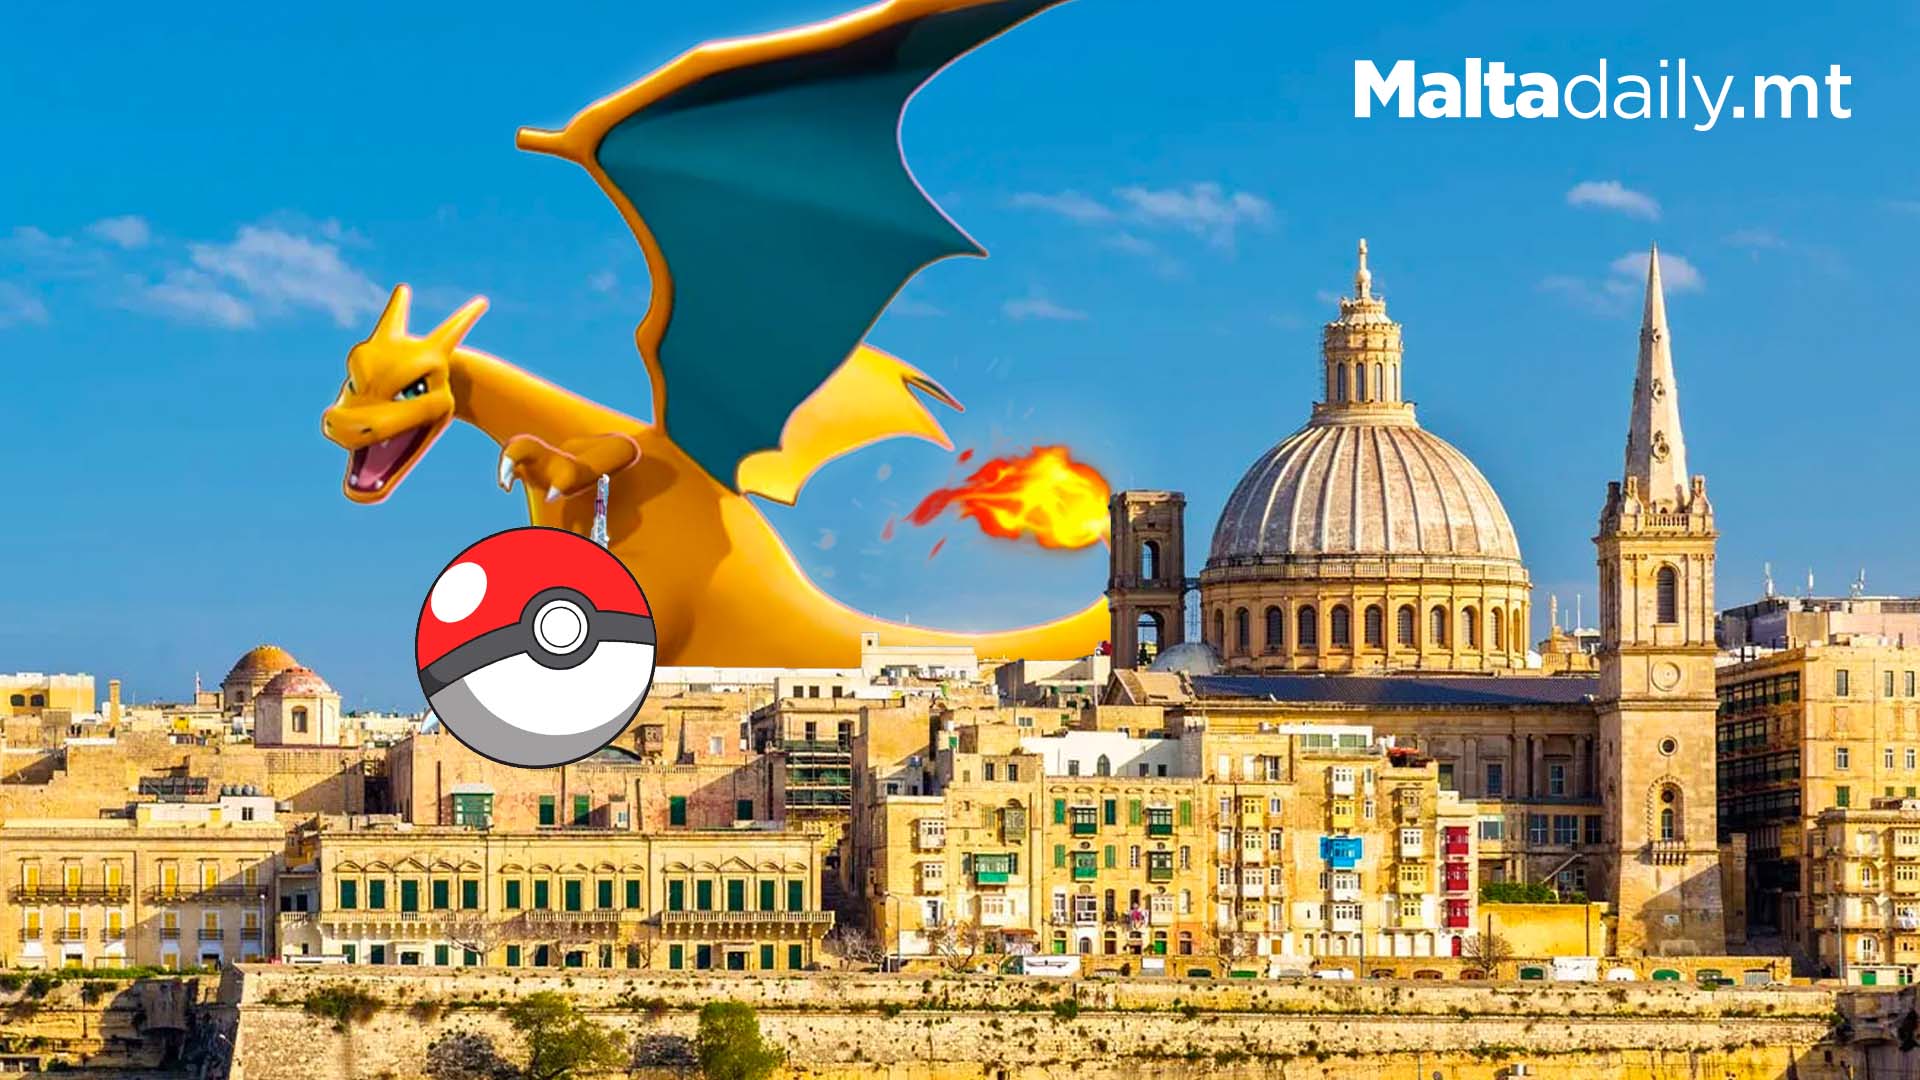 Malta Has A Favourite Pokemon... And It's Charizard